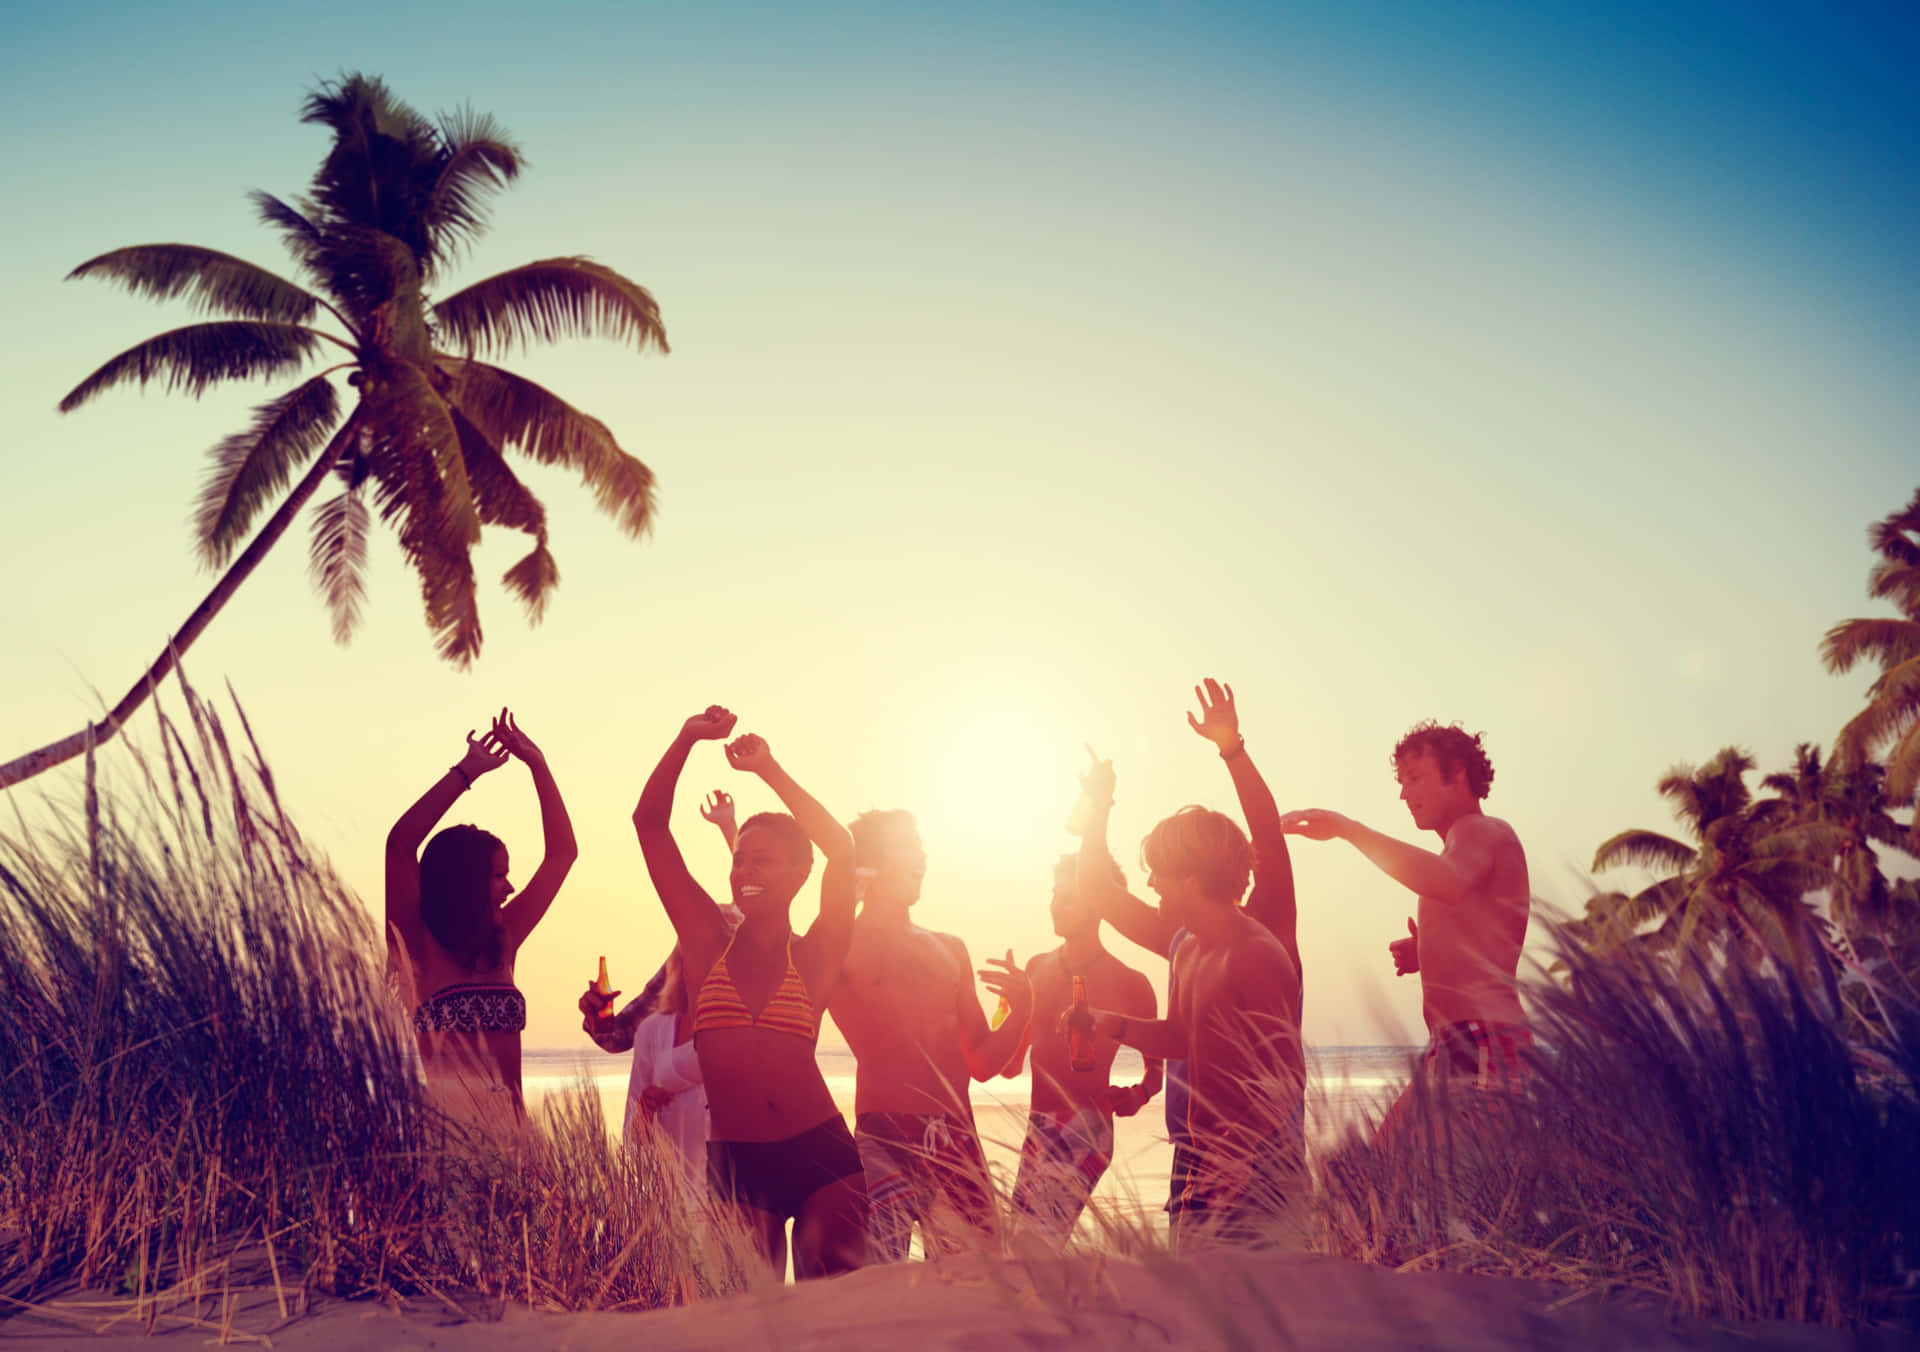 Beach Dance Party Under a Magical Sunset Wallpaper